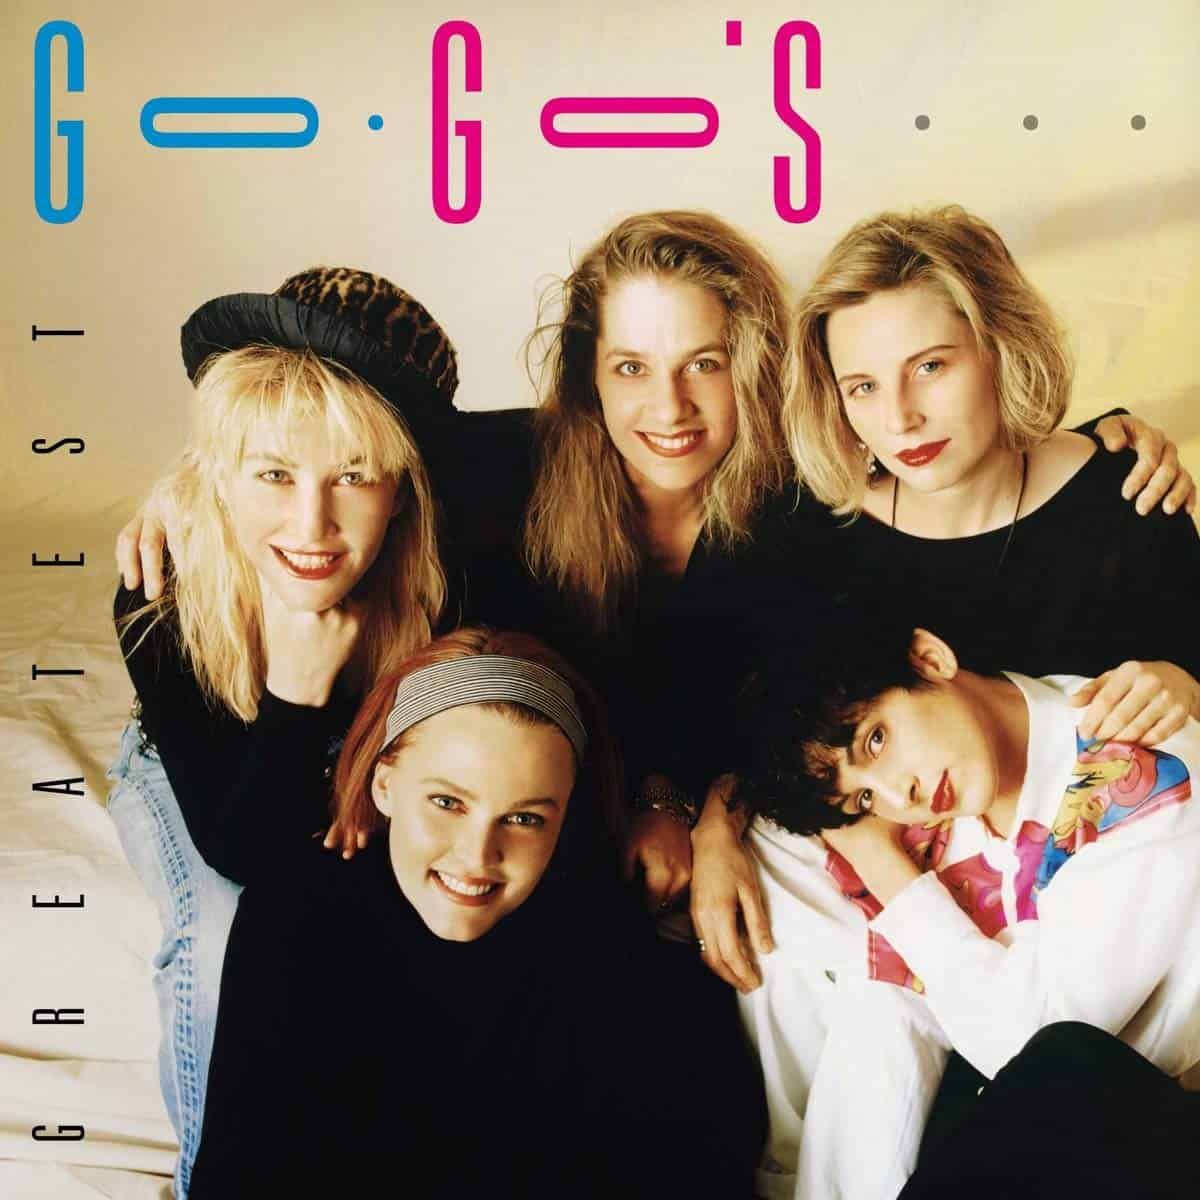 Go-Go's-Greatest-Hits-vinyl-record-album-front